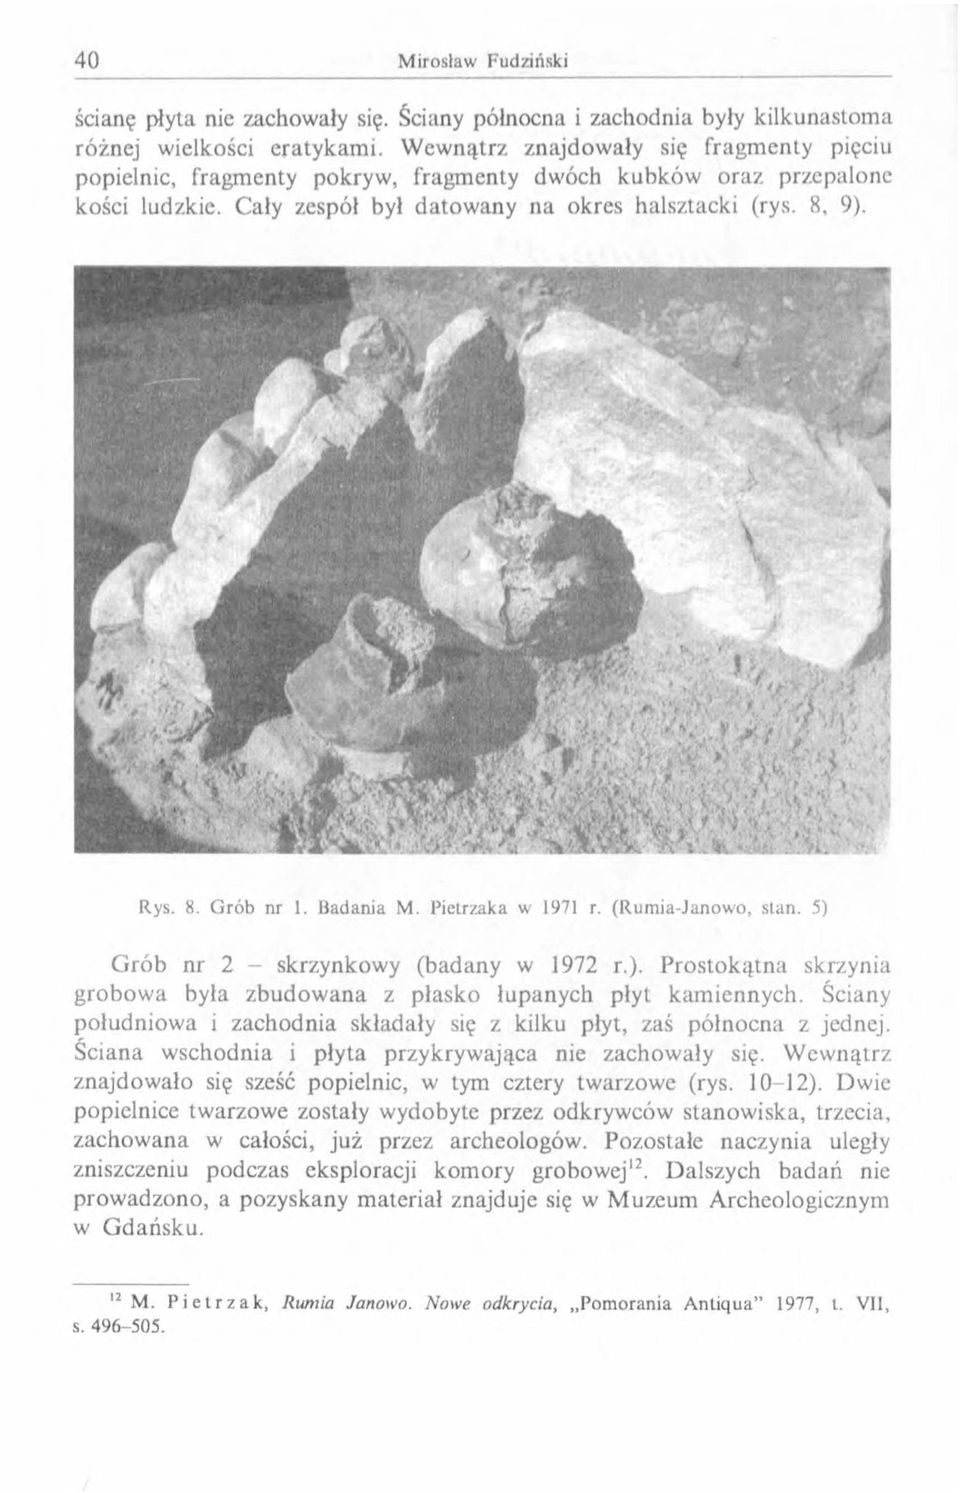 Badania M. Pietrzaka w 1971 r. (Rumia-Janowo, stan. 5) Grób nr 2 - skrzynkowy (badany w 1972 r.). Prostokątna skrzynia grobowa była zbudowana z płasko łupanych płyt kamiennych.